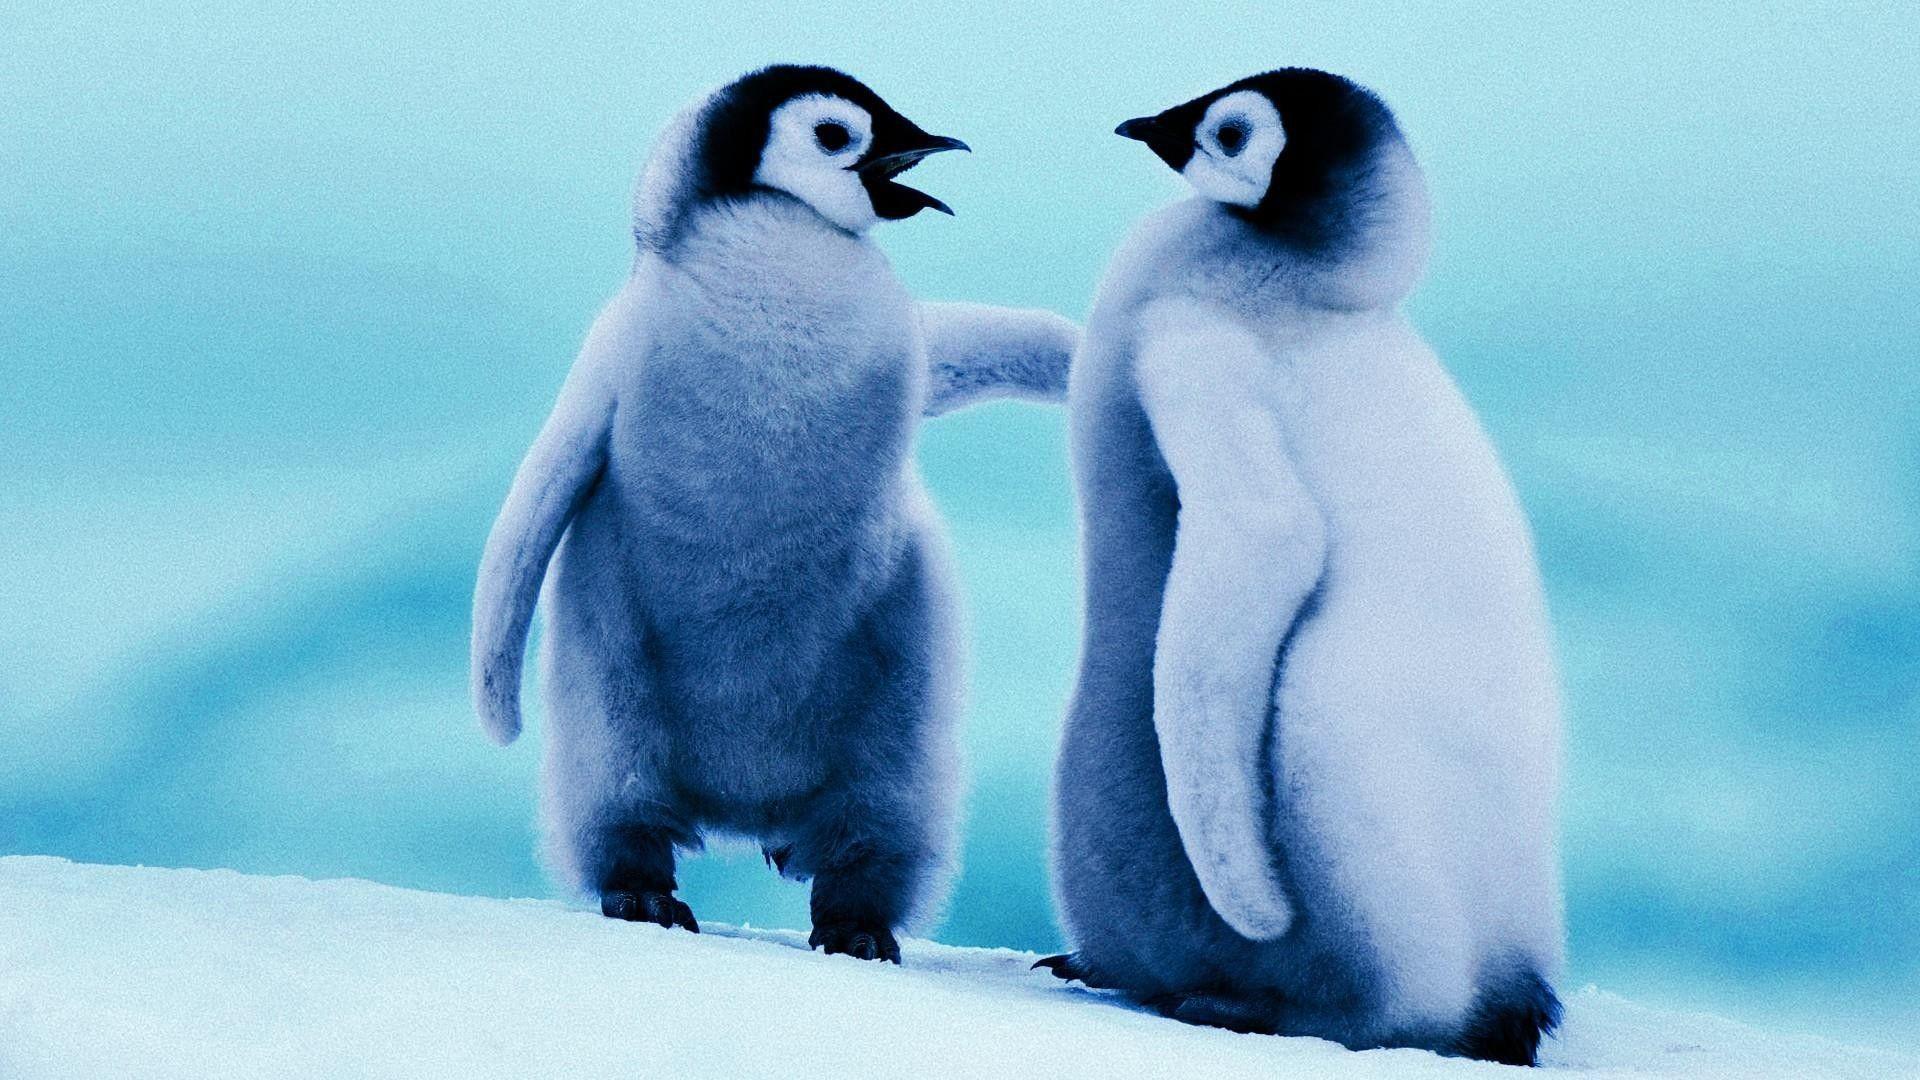 Bạn đã bao giờ được ngắm nhìn loài chim cánh cụt đáng yêu và hài hước chưa? Hãy nhìn vào hình nền chim cánh cụt dễ thương này và cảm nhận sự ngộ nghĩnh, lầy lội của chúng. Hình nền này sẽ khiến bạn cười tươi và thêm yêu đời.